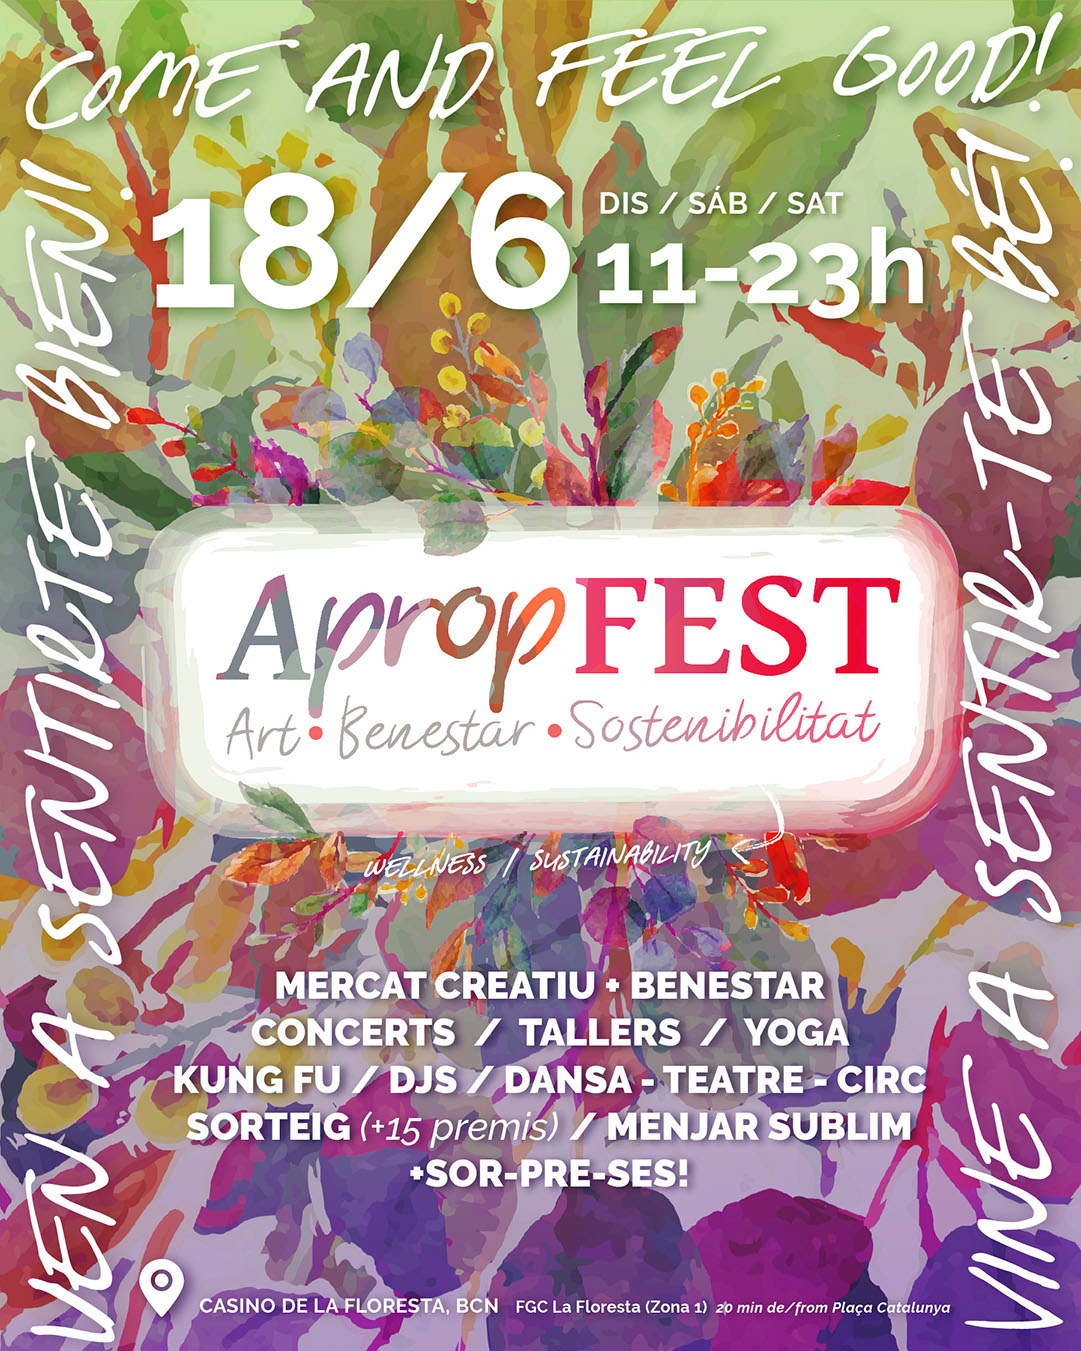  APROP FEST ● Art / Benestar / Sostenibilitat - 18 de Junio, 2022 en el Casino de la Floresta, BCN